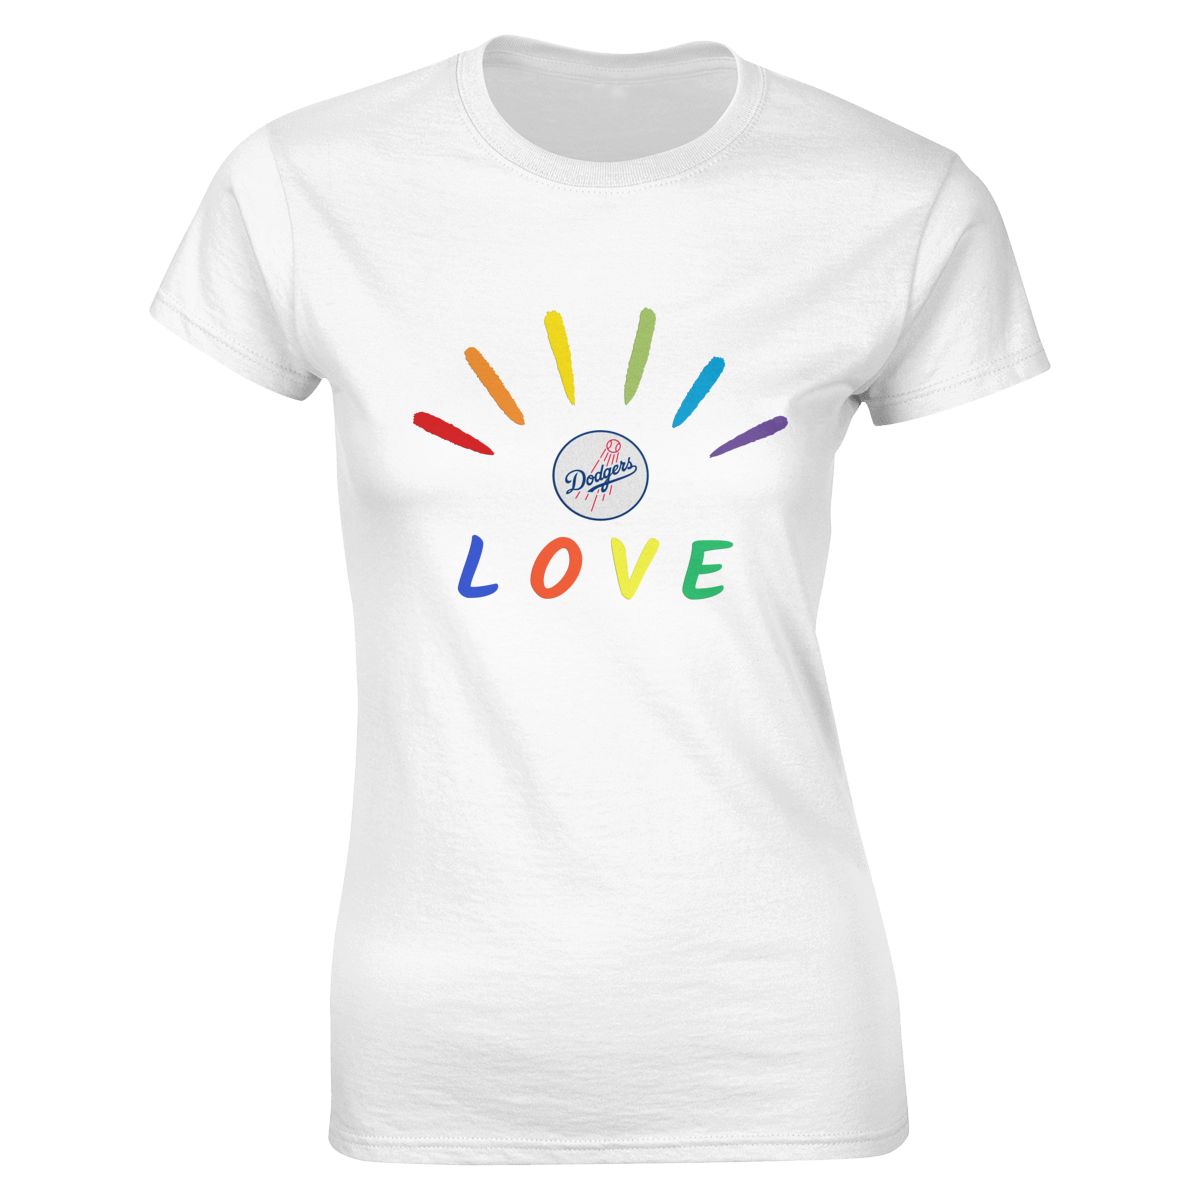 Los Angeles Dodgers Pride Love Women's Soft Cotton T-Shirt